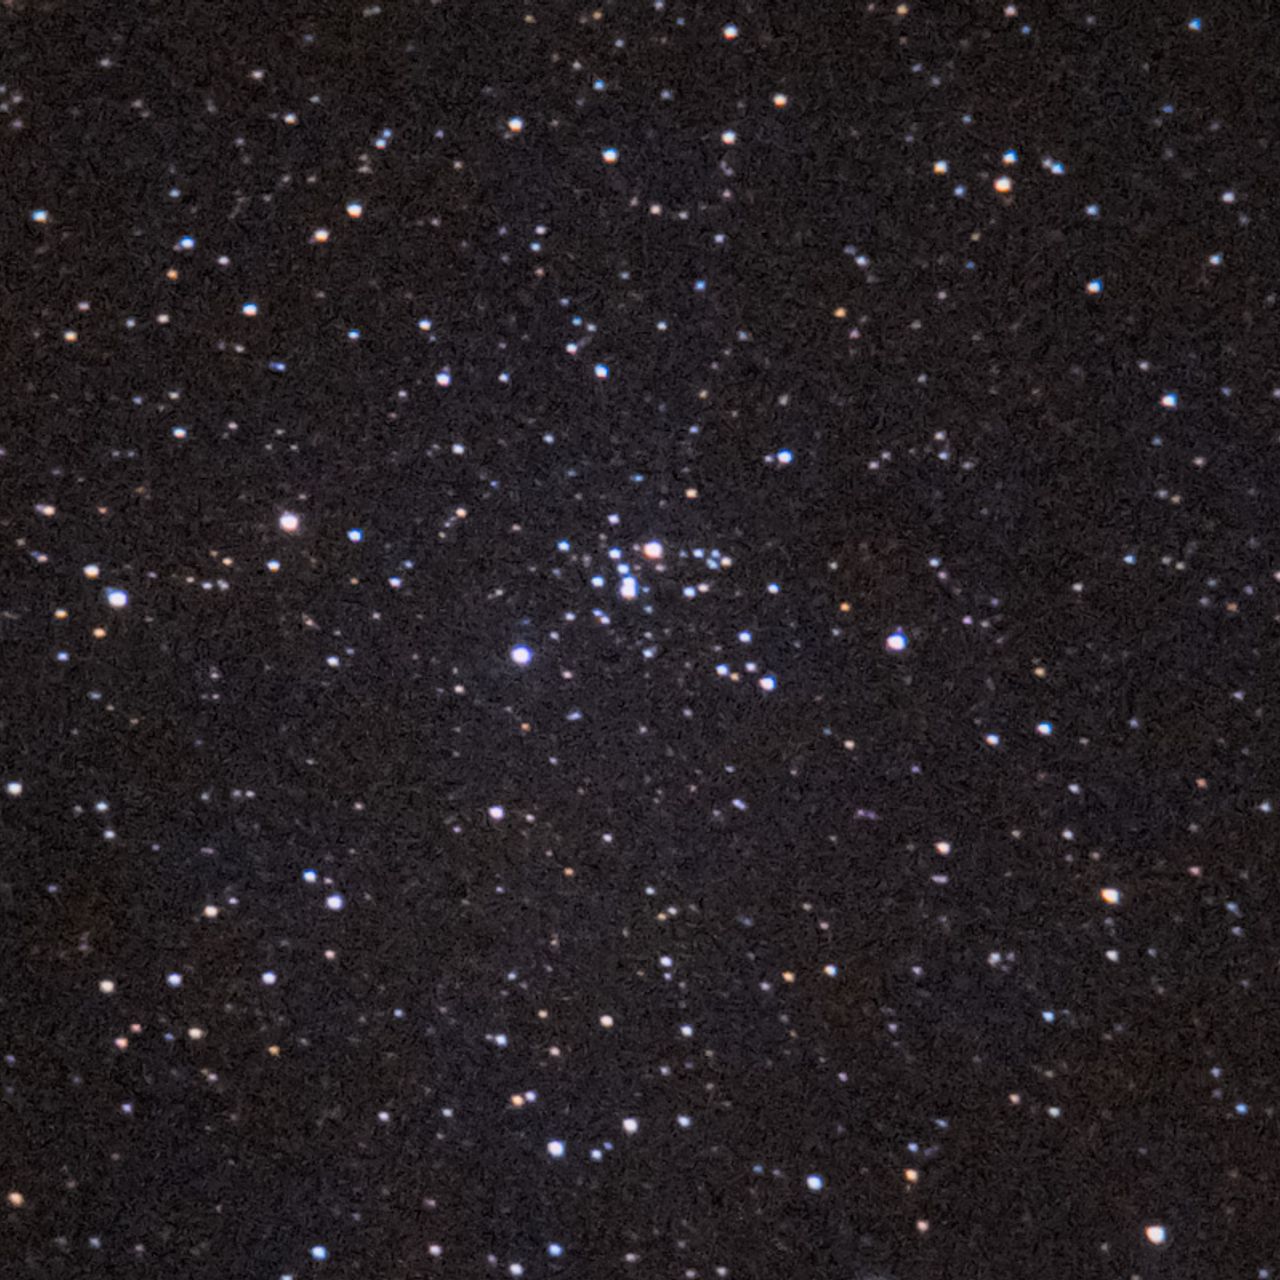 NGC2186